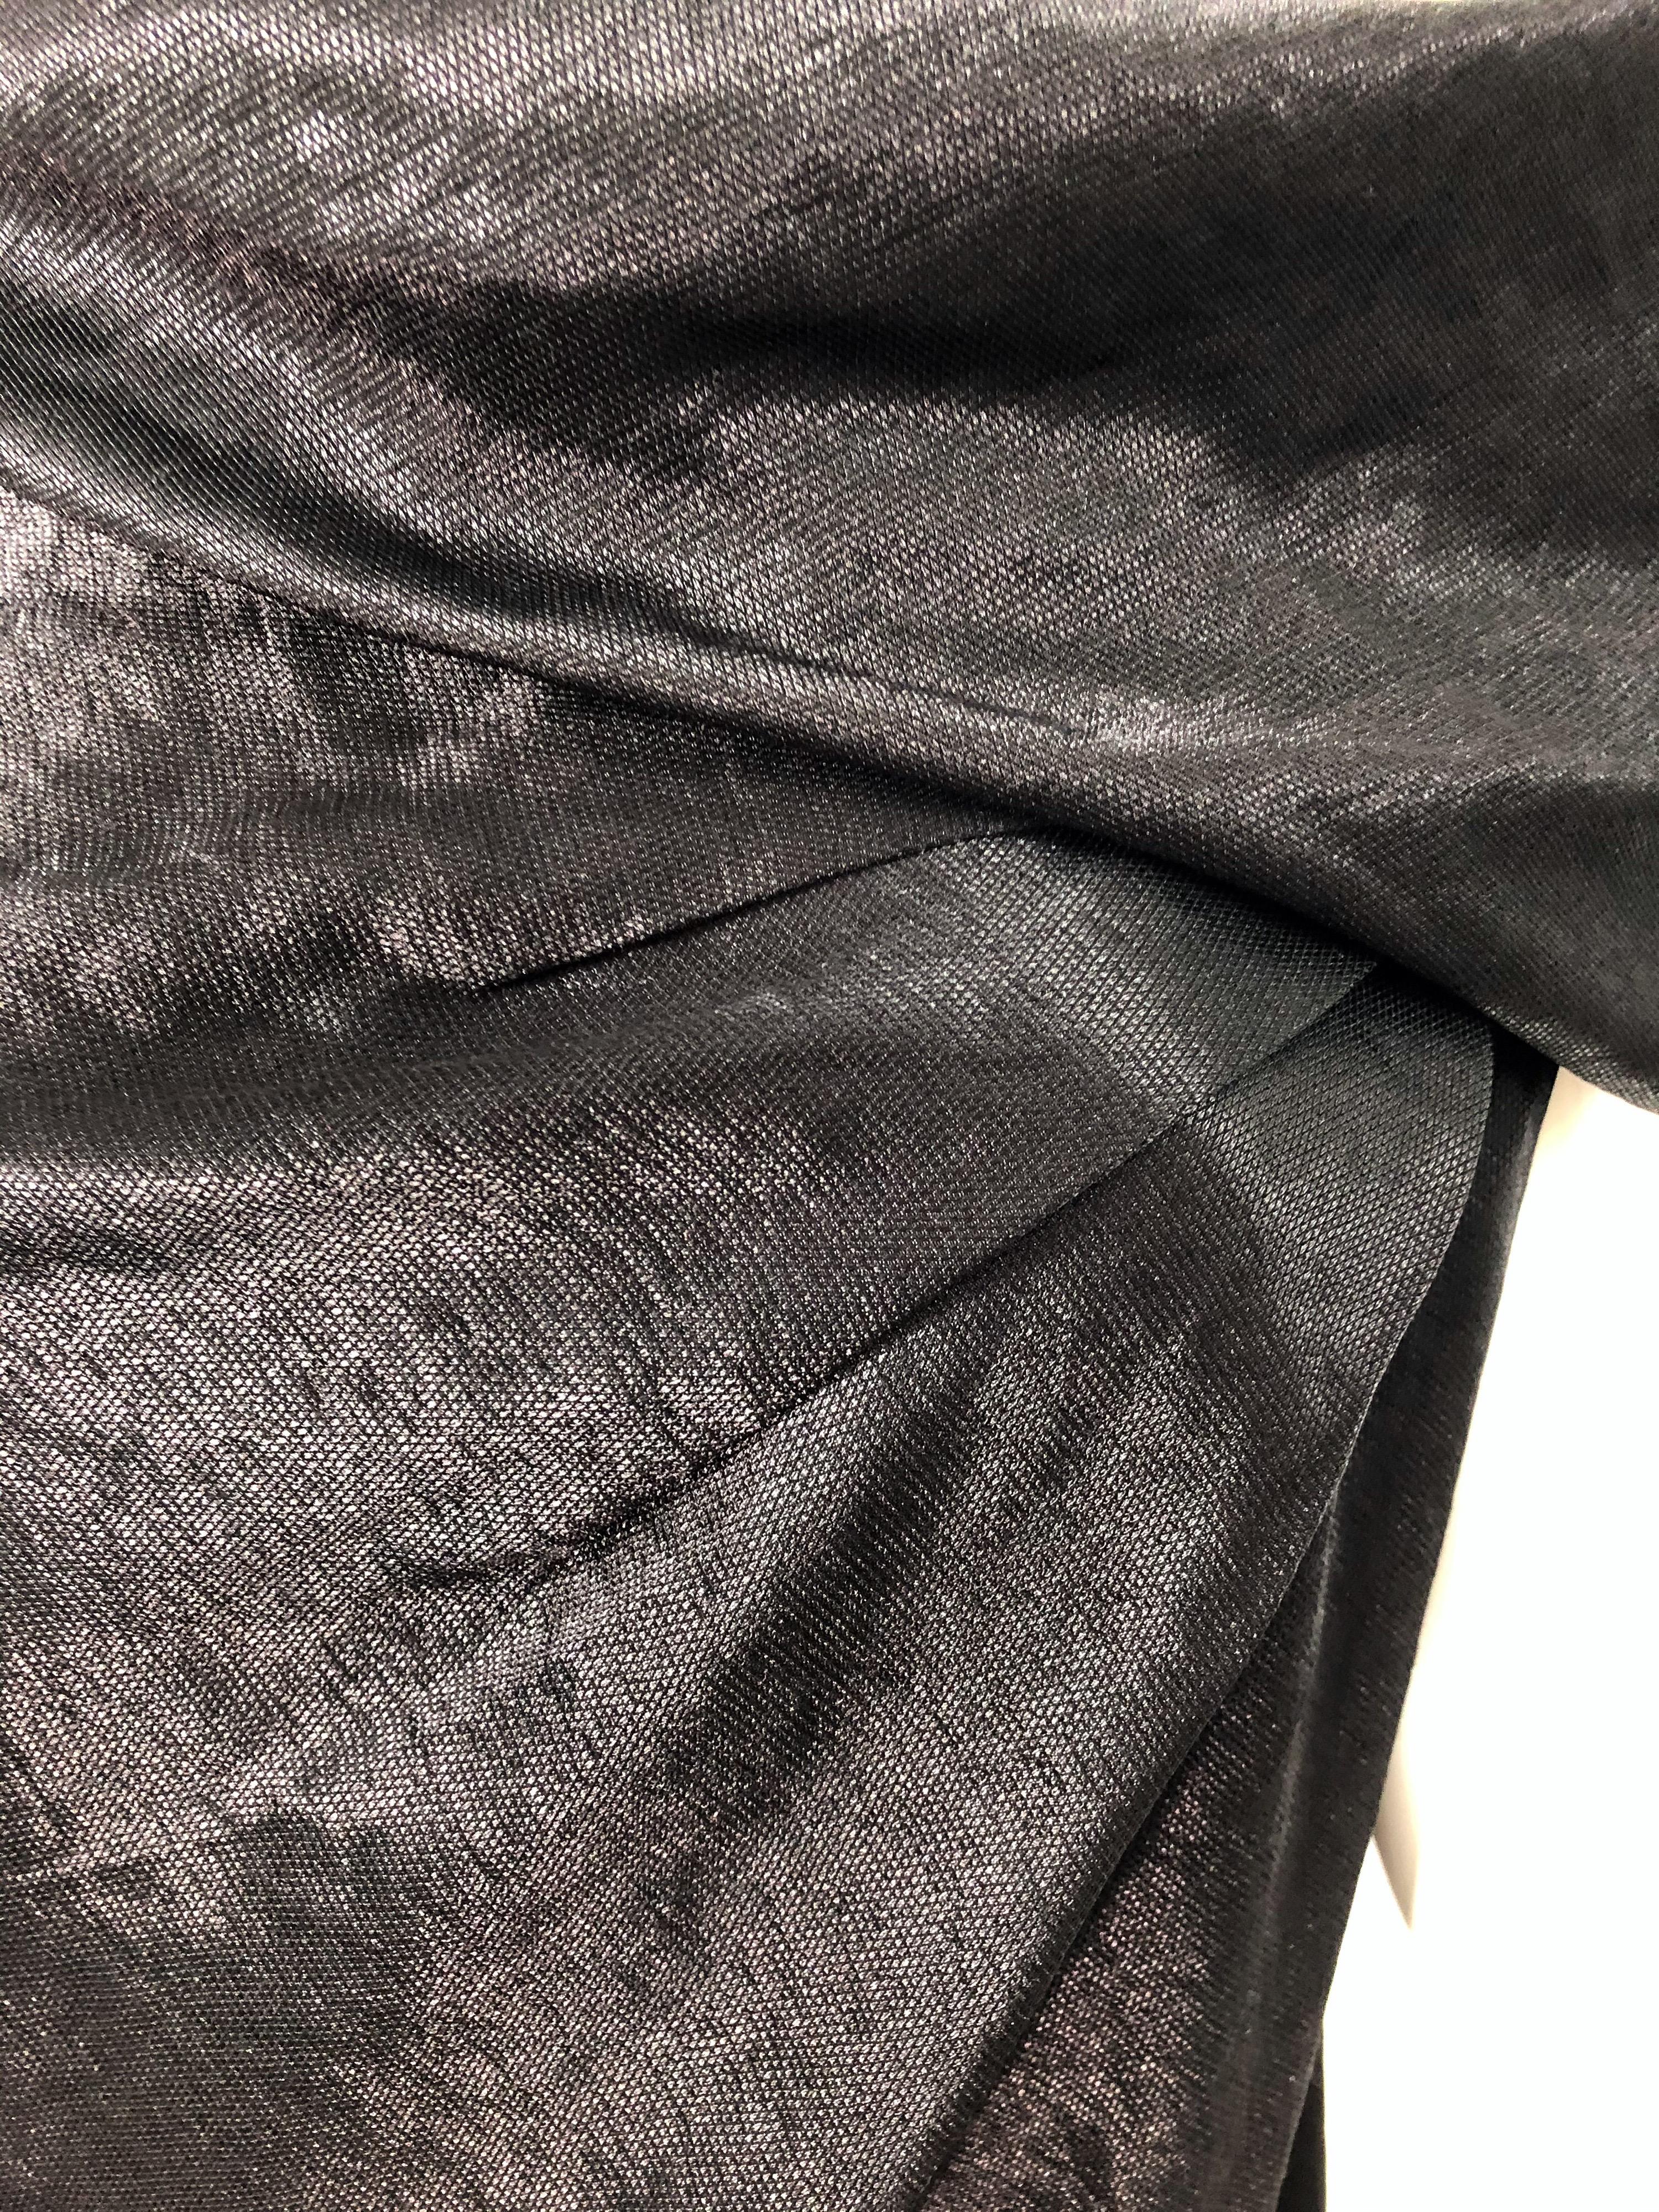 NWT 1990s Donna Karan Size 8 Black Metallic Rayon Off - Shoulder Vintage Dress For Sale 5